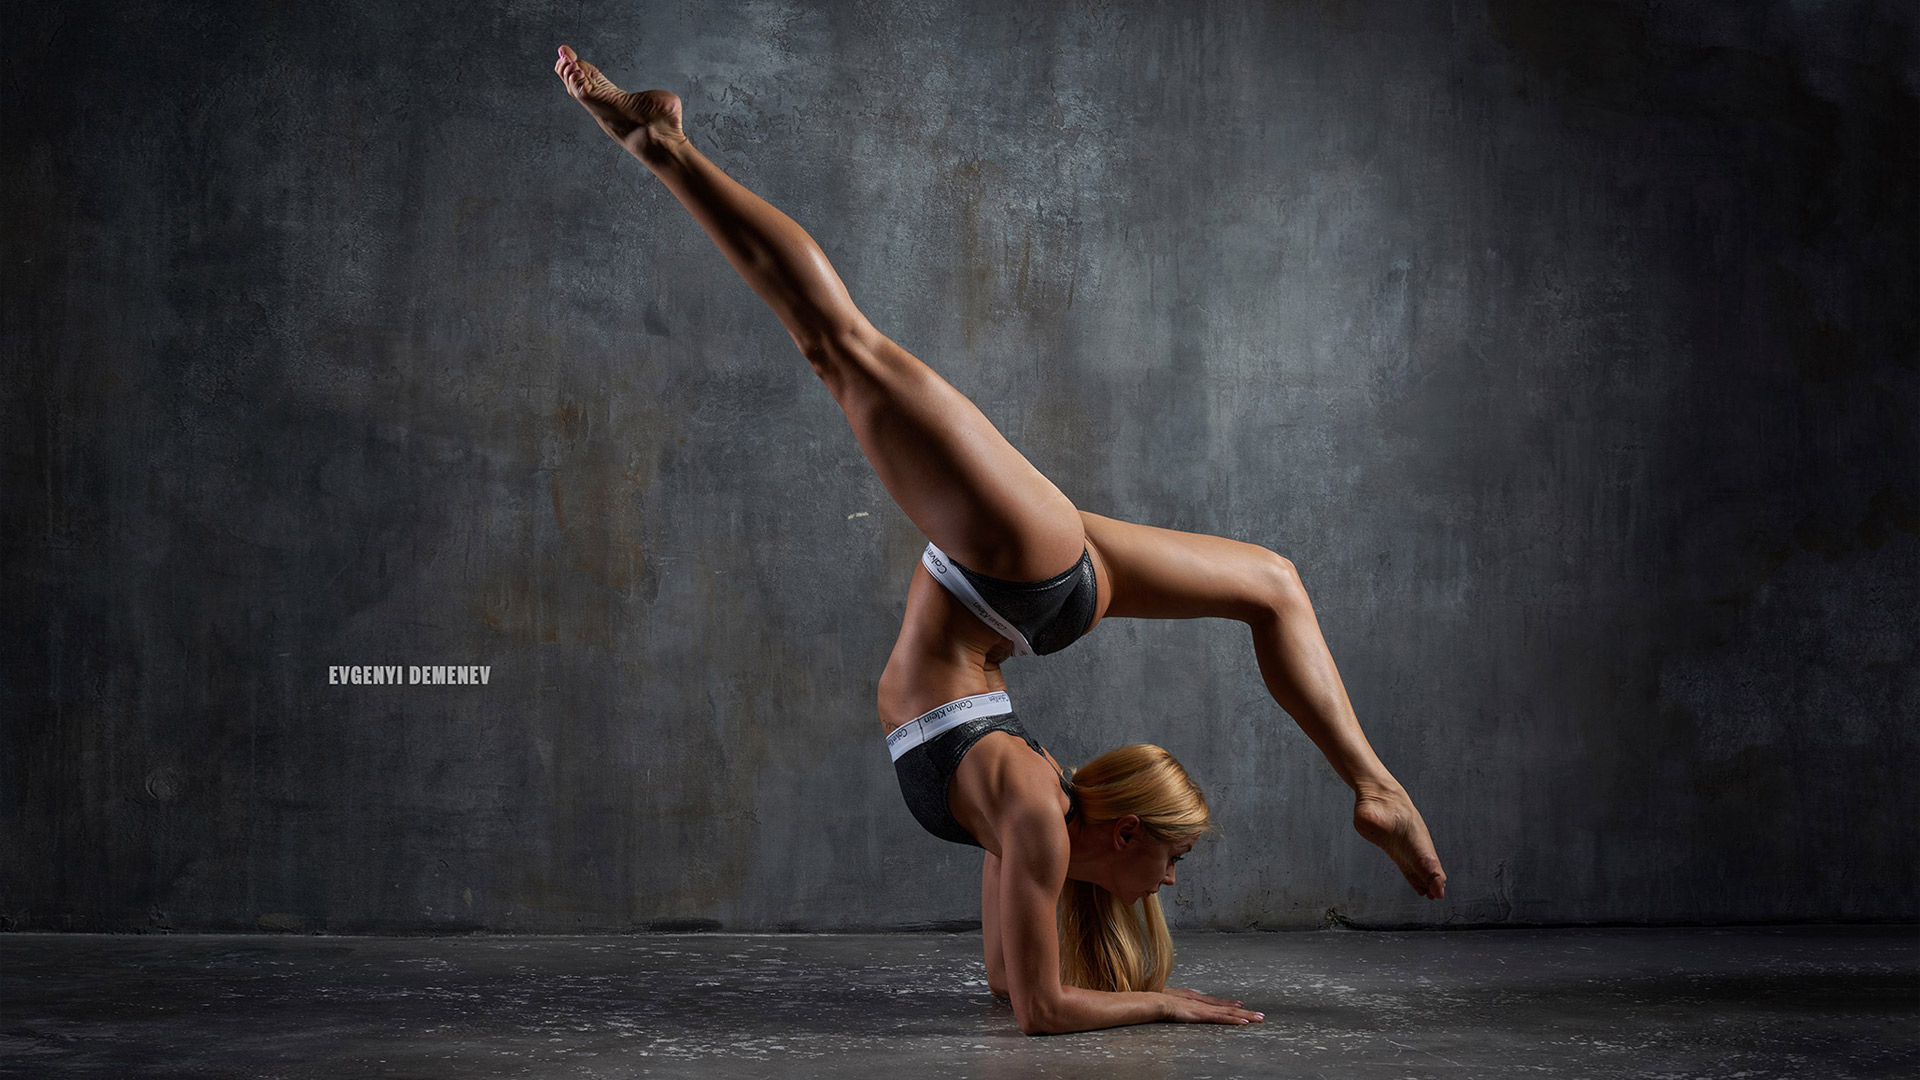 Rhythmic gymnastic dancer